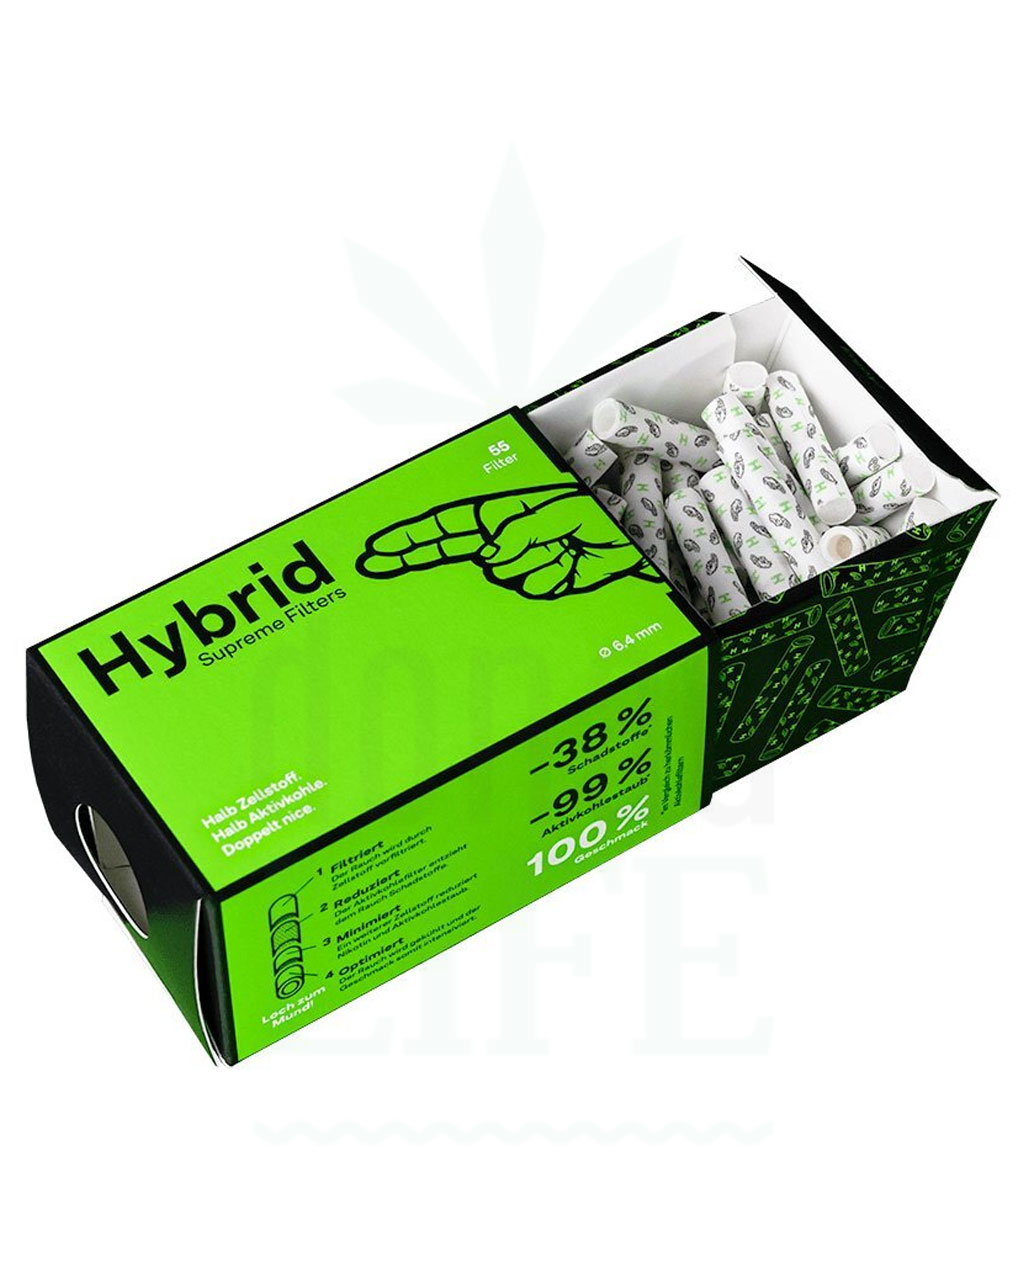 HYBRID-aktiivihiilisuodatin + selluloosa, 6,4 mm, 50 kpl